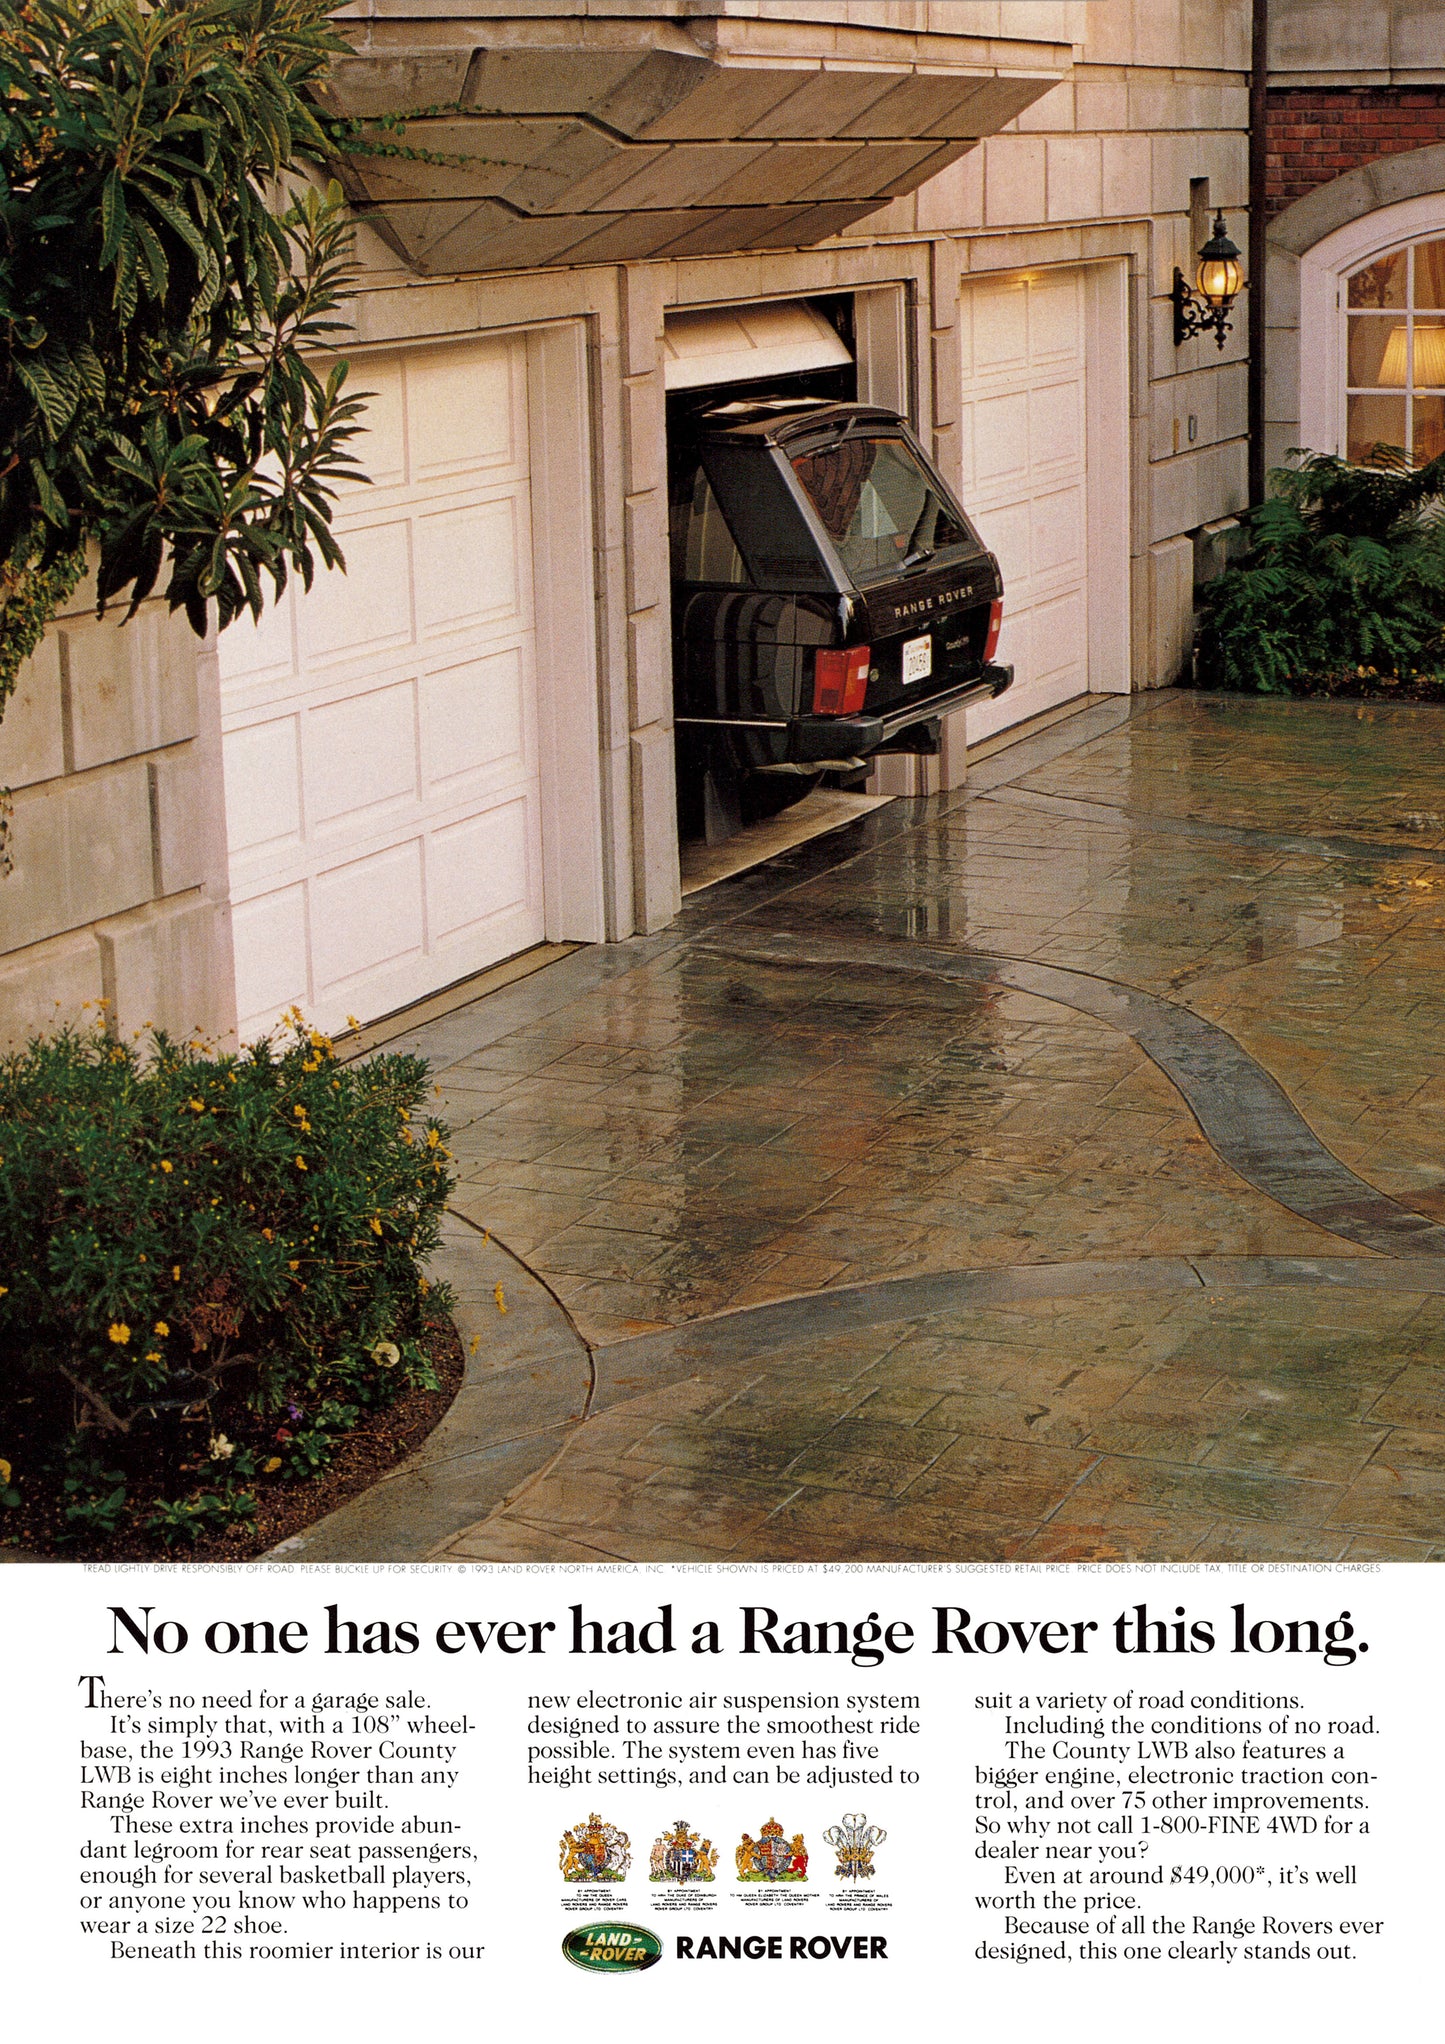 Le livre "Une vie en Range Rover" + 6 posters + 6 cartes postales